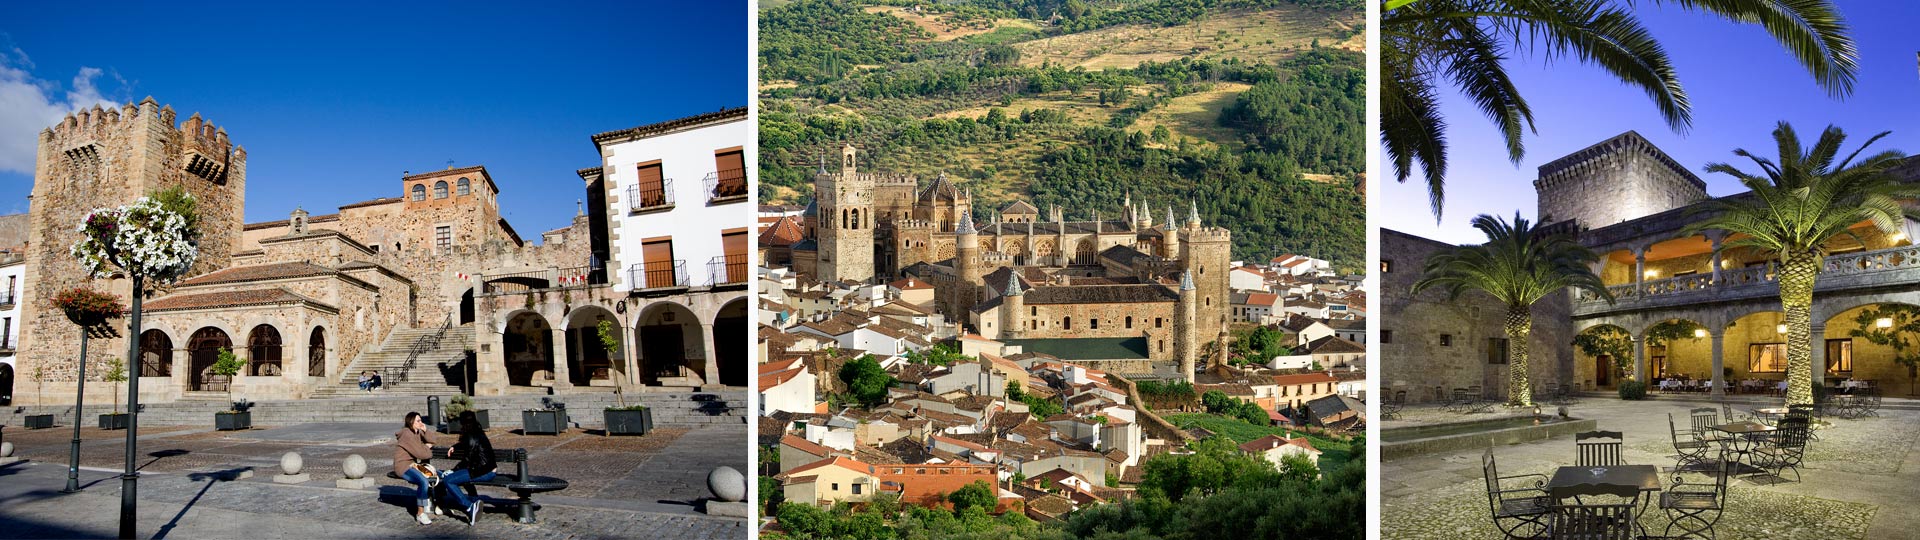 Castle landscapes in Extremadura: Cáceres, Guadalupe and the Parador hotel in Jarandilla de la Vera